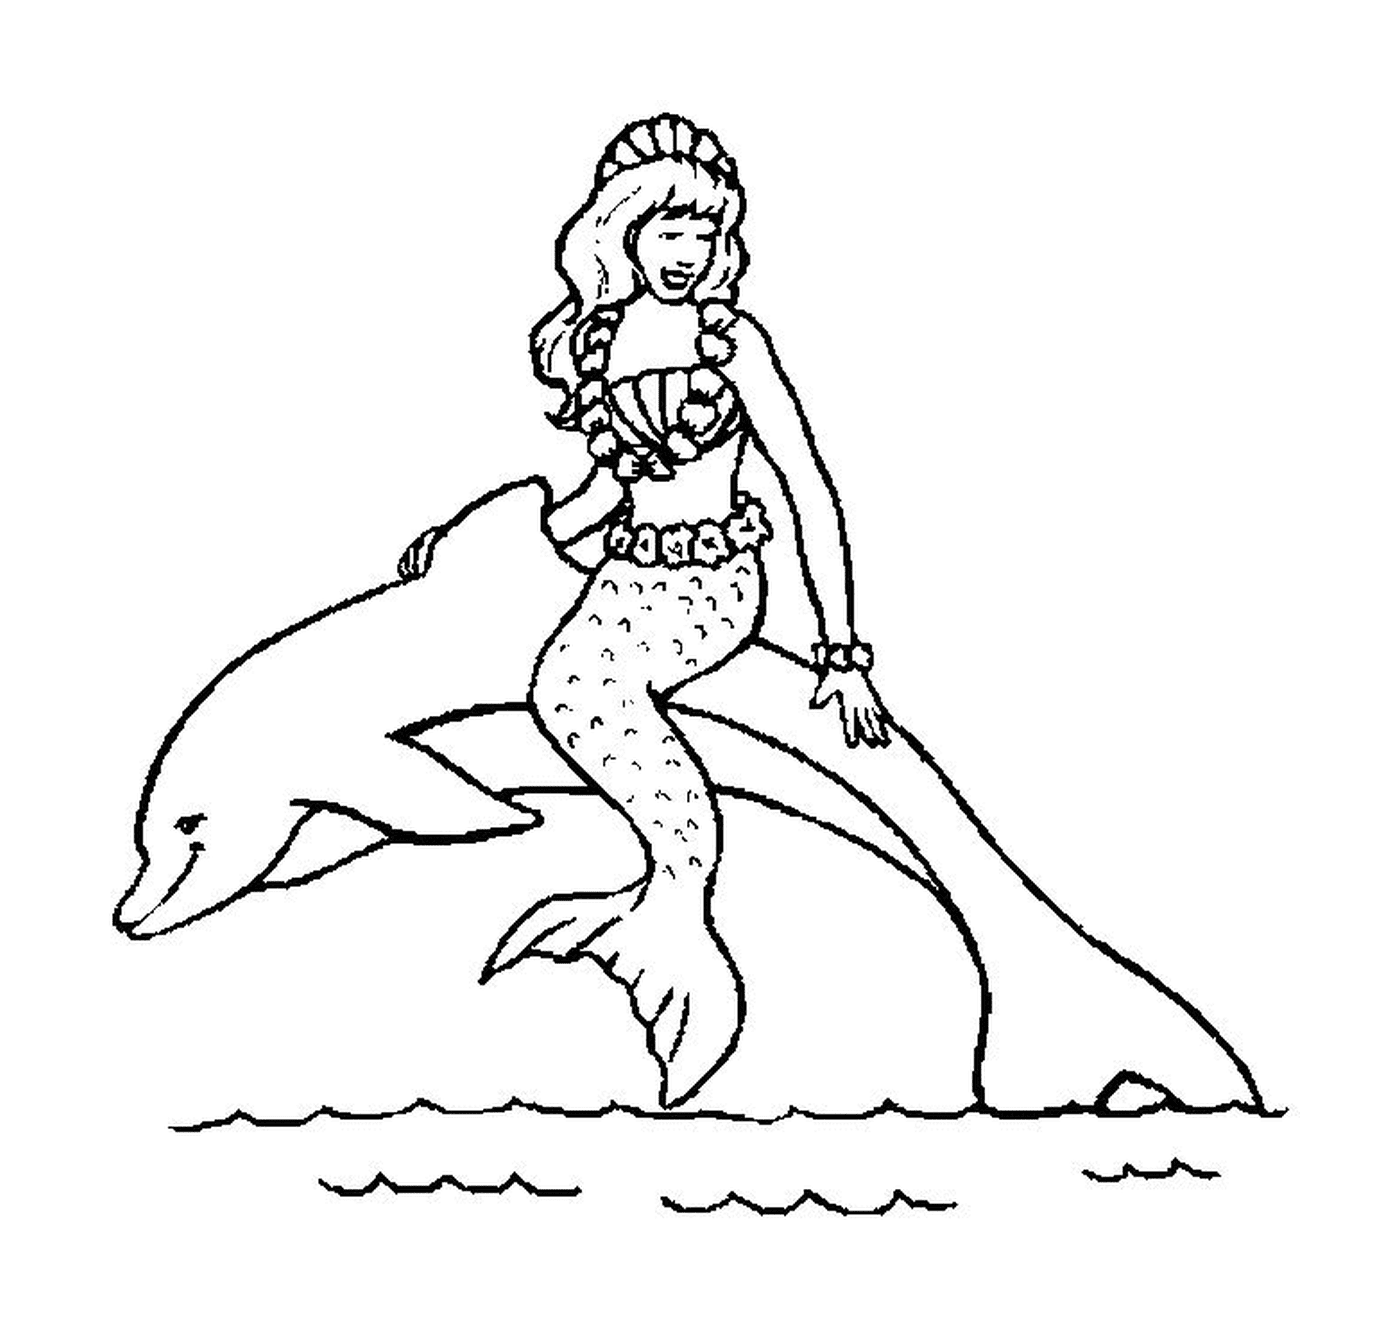   Une femme chevauchant un dauphin dans l'eau 